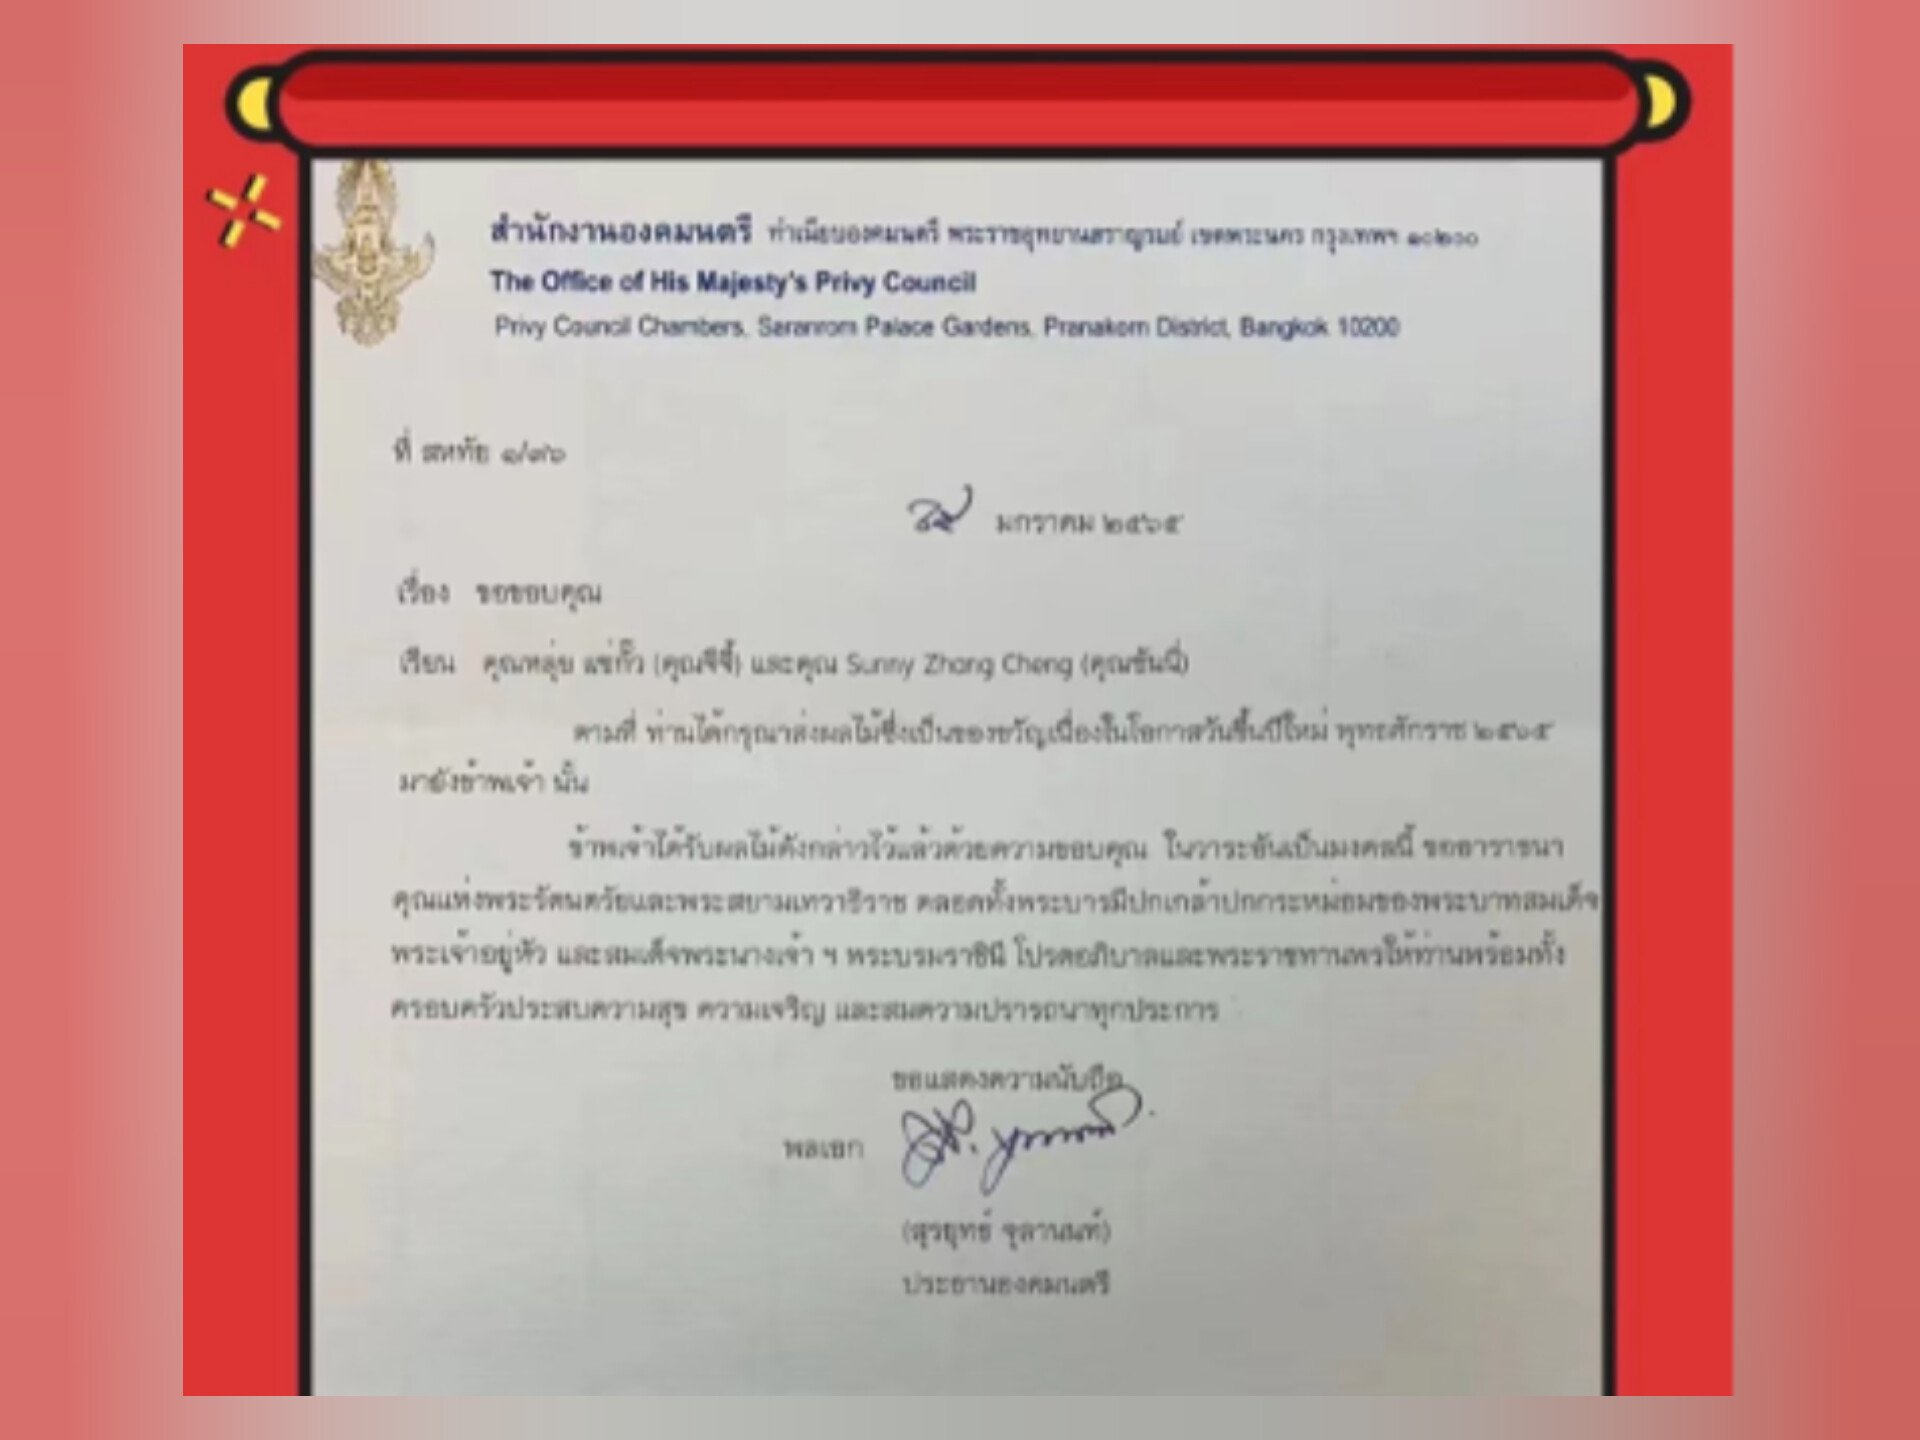 泰国枢密院主席素拉育上将致函，泰国亚洲大众集团董事长郭蕊女士